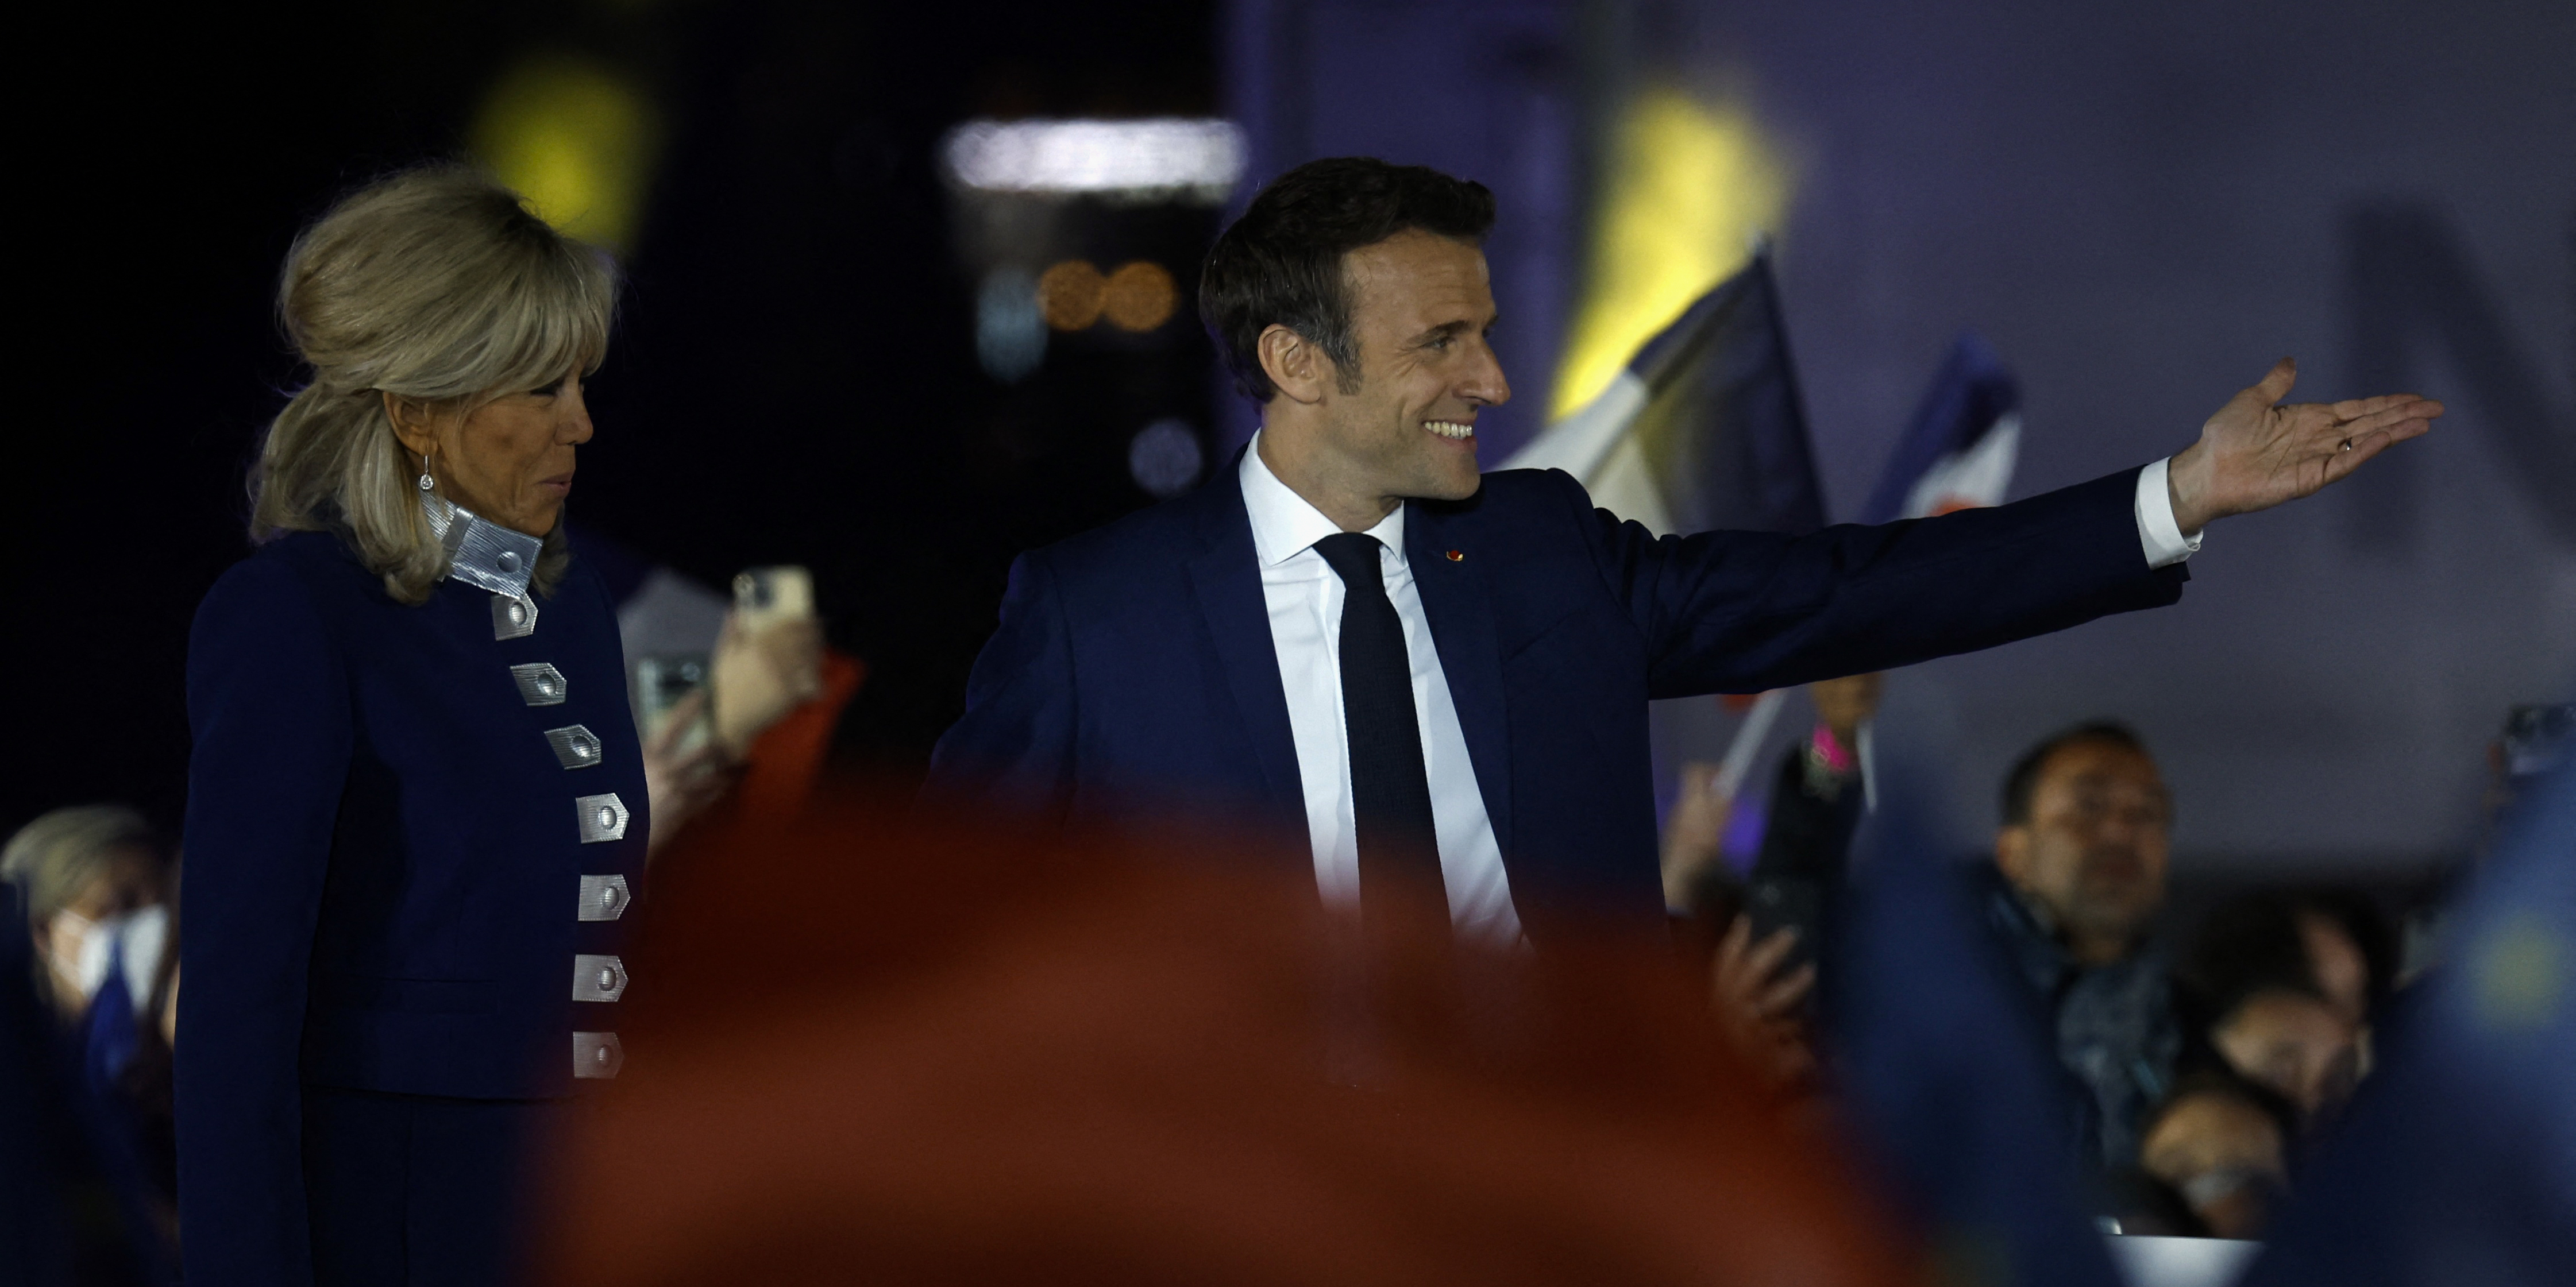 Proclamation des résultats, investiture, nominations... l'agenda chargé de Macron